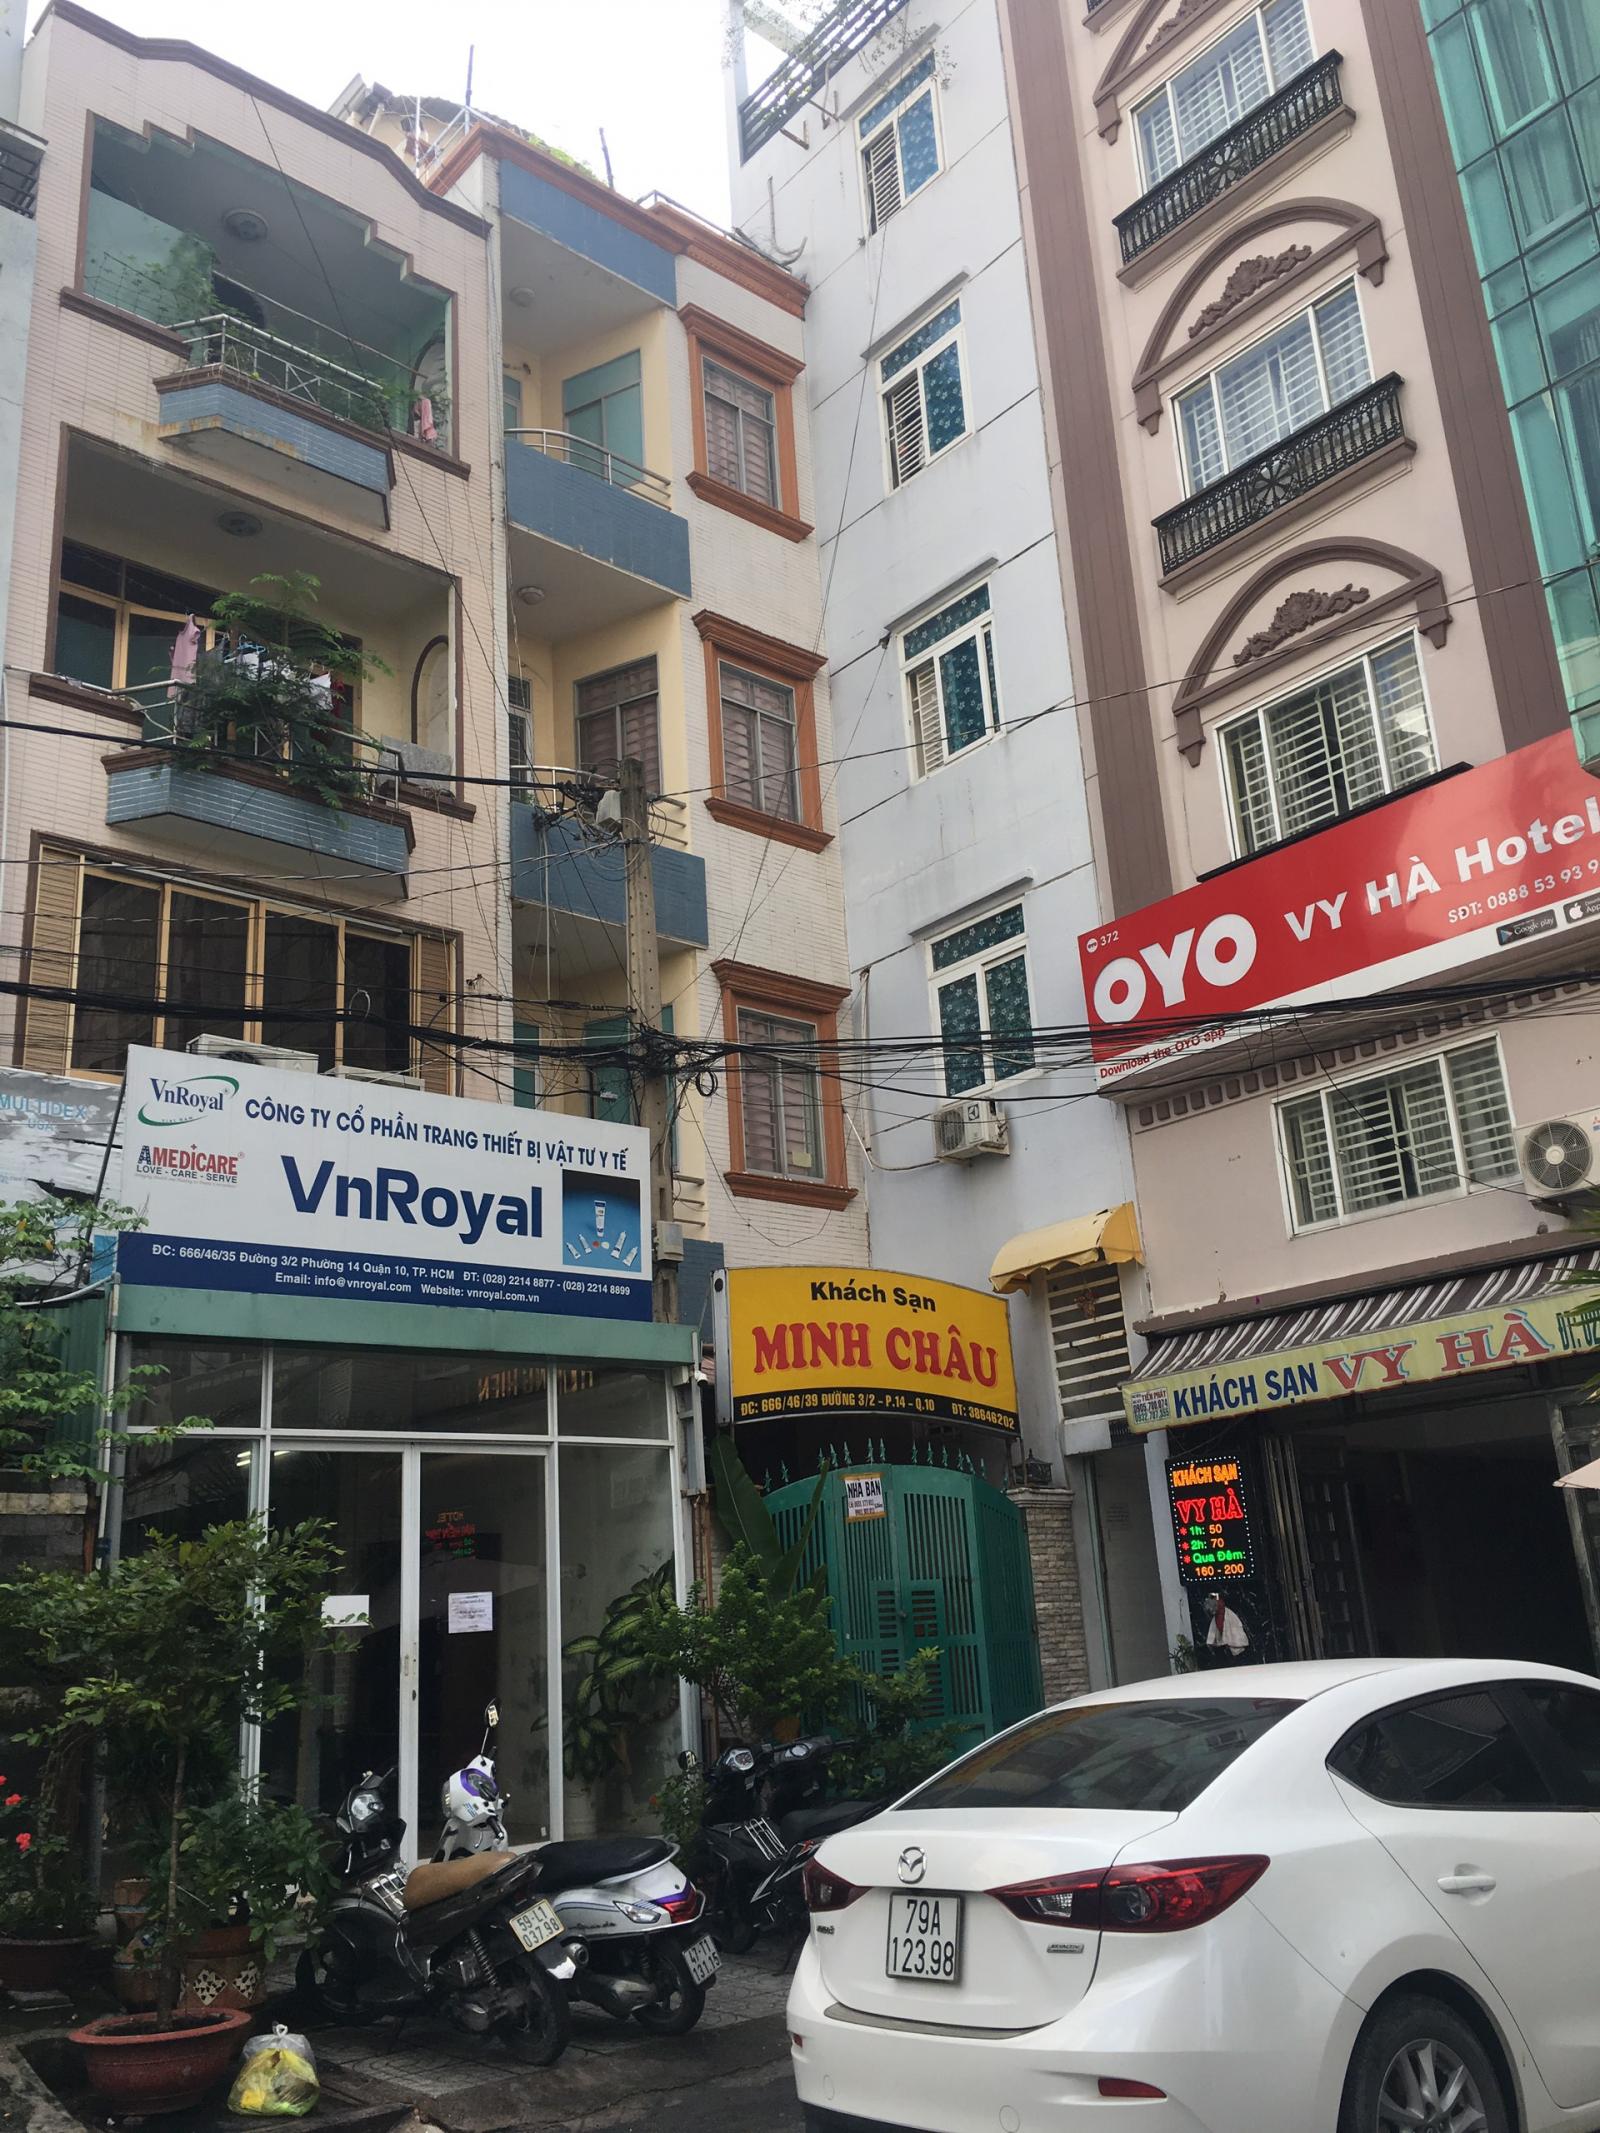 Bán nhà mt Ngô Quyền – Nguyễn trãi 5 x 24 giá rẻ giật mình,chỉ 1 căn duy nhất